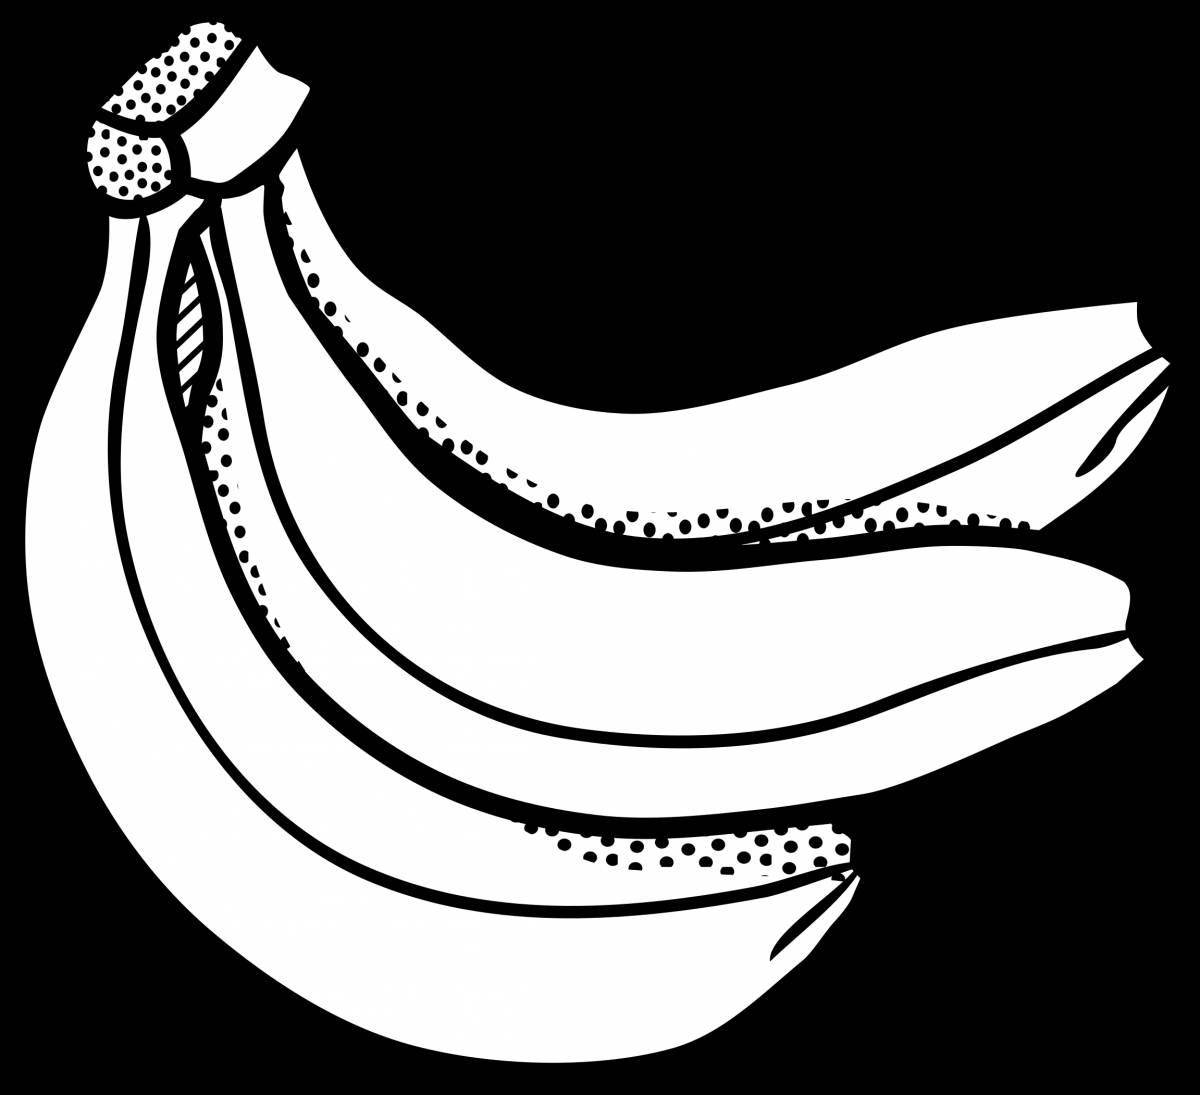 A striking drawing of a banana